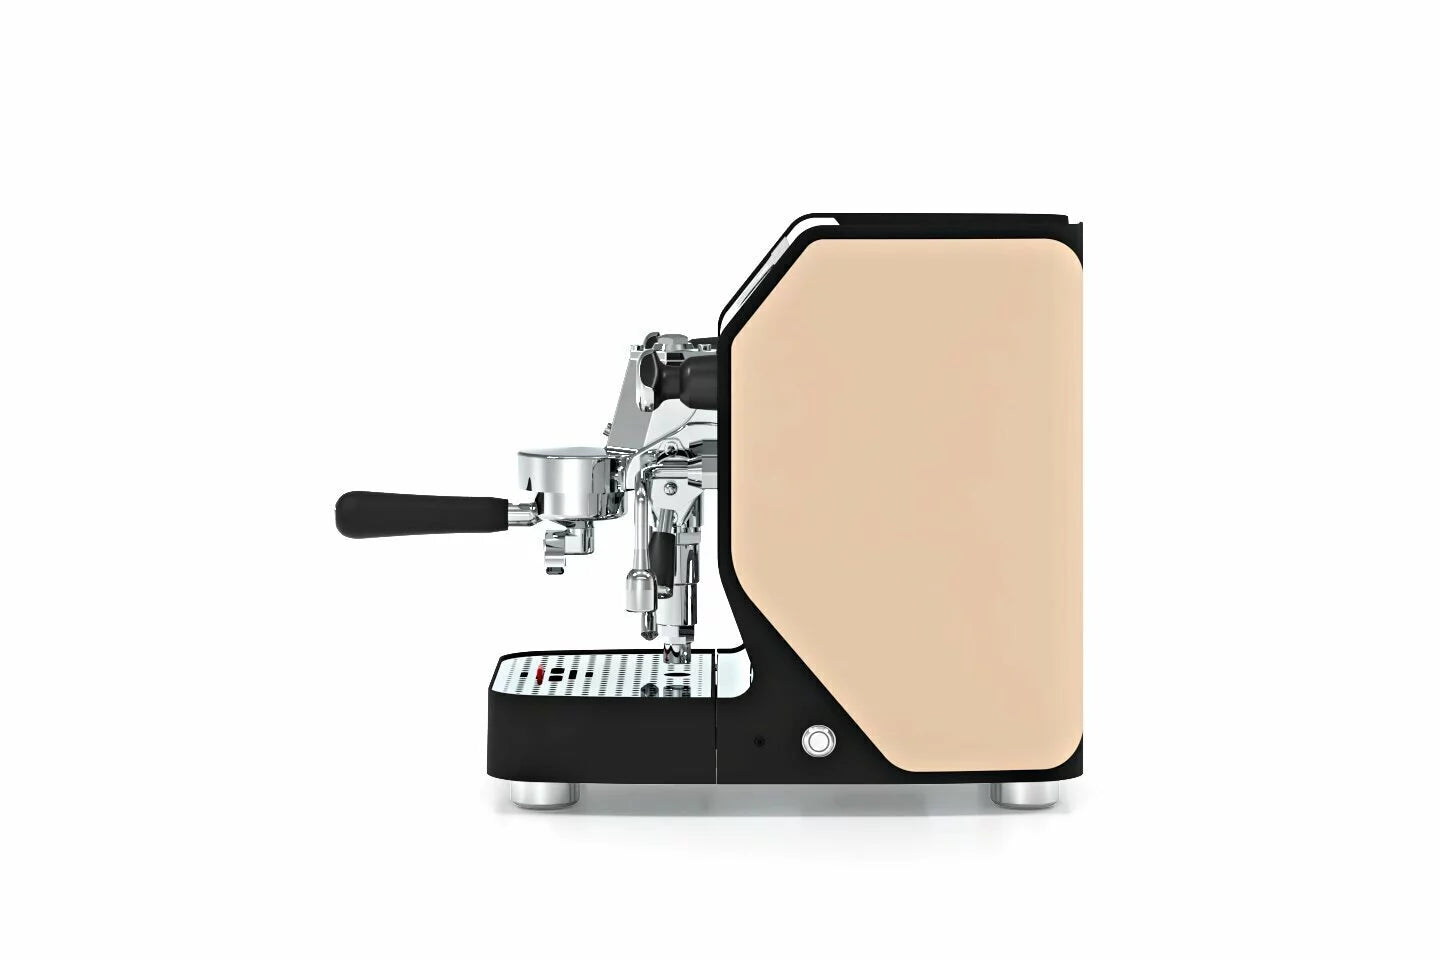 VBM 家用濃縮咖啡機 | Domobar Junior Digital 1G